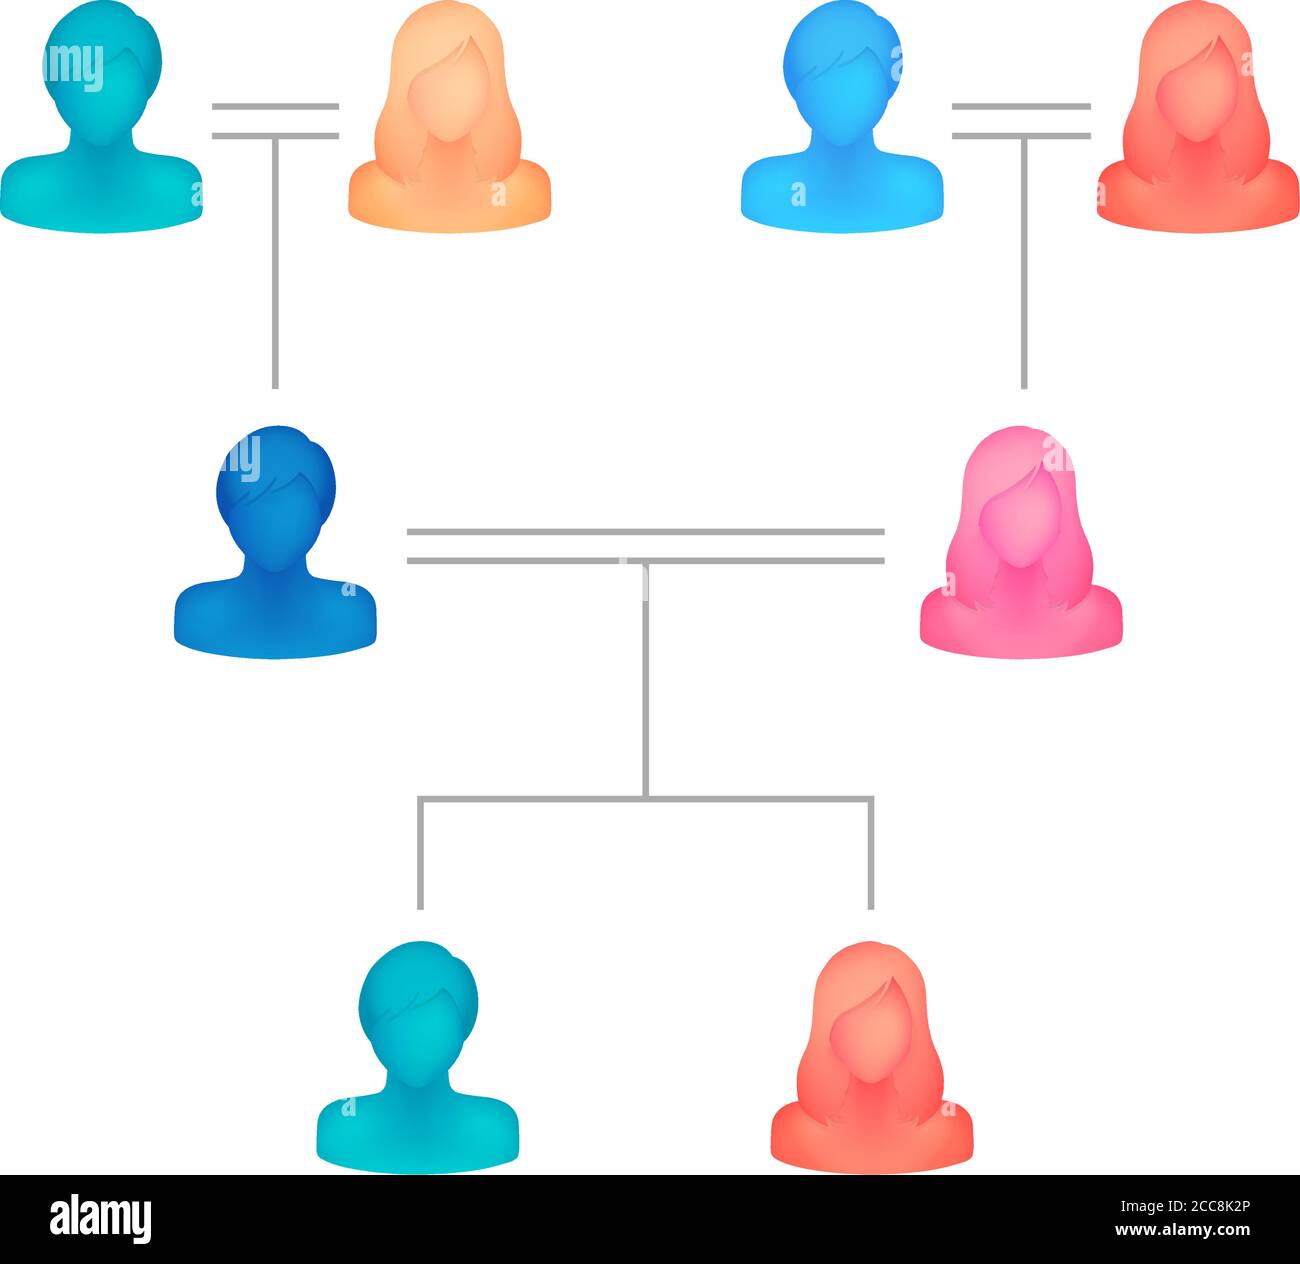 Illustrazione vettoriale dell'albero della famiglia ( persona silhouette senza volto / 3 generazioni ) Illustrazione Vettoriale